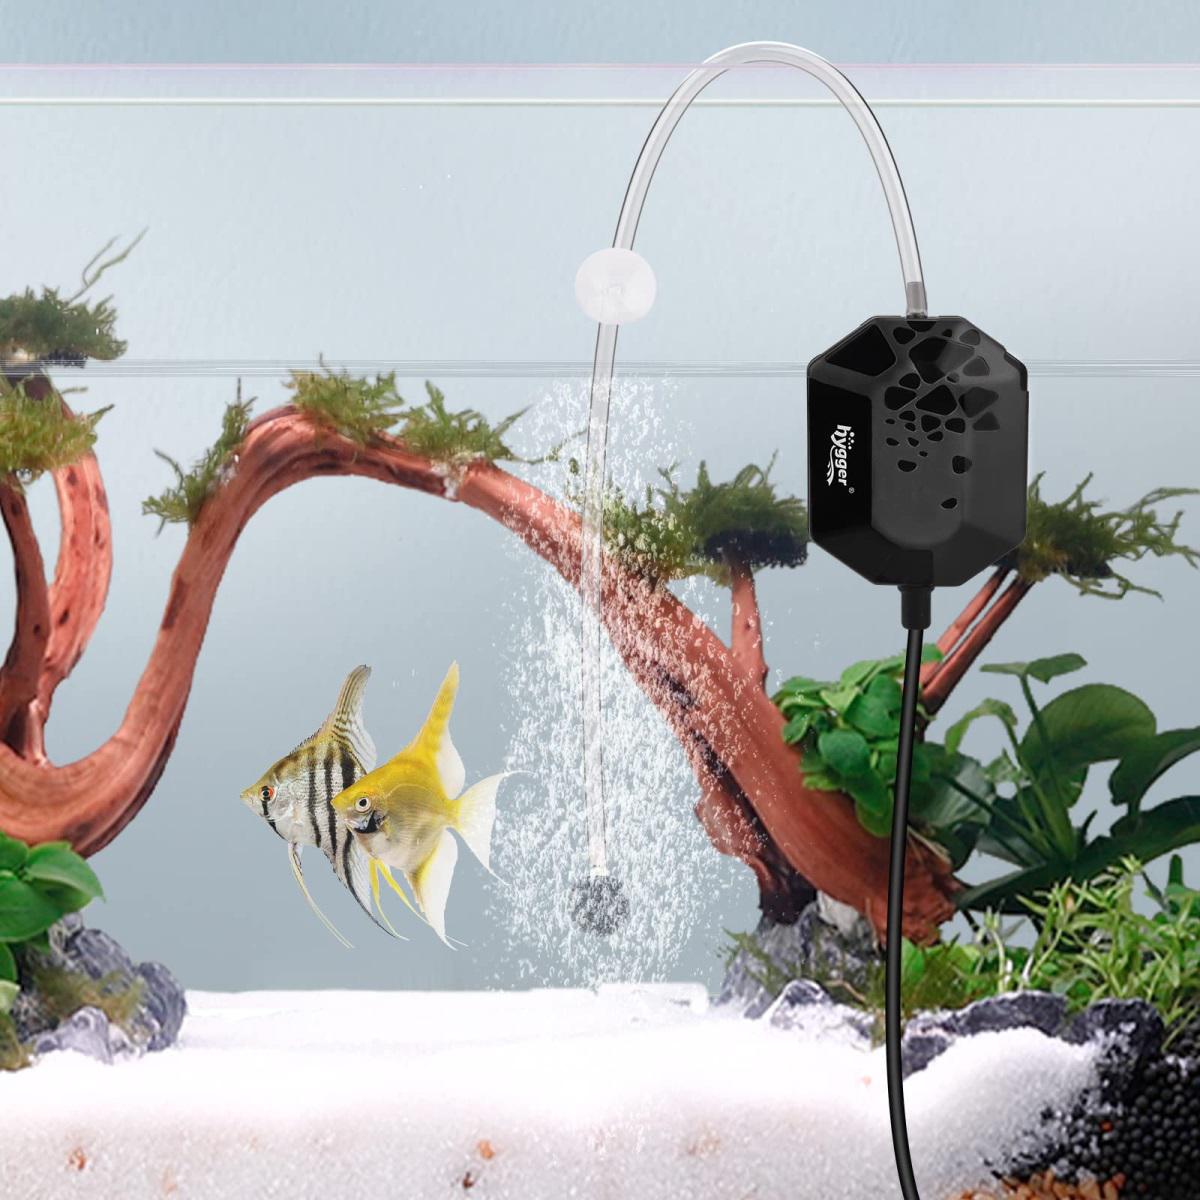 Mini Aquarium Air Pump: 3W/5W, Quiet, Efficient Oxygen, Ideal For Aquariums,  Pools & Outdoor Fish Tanks. From Alpha_officialstore, $3.98